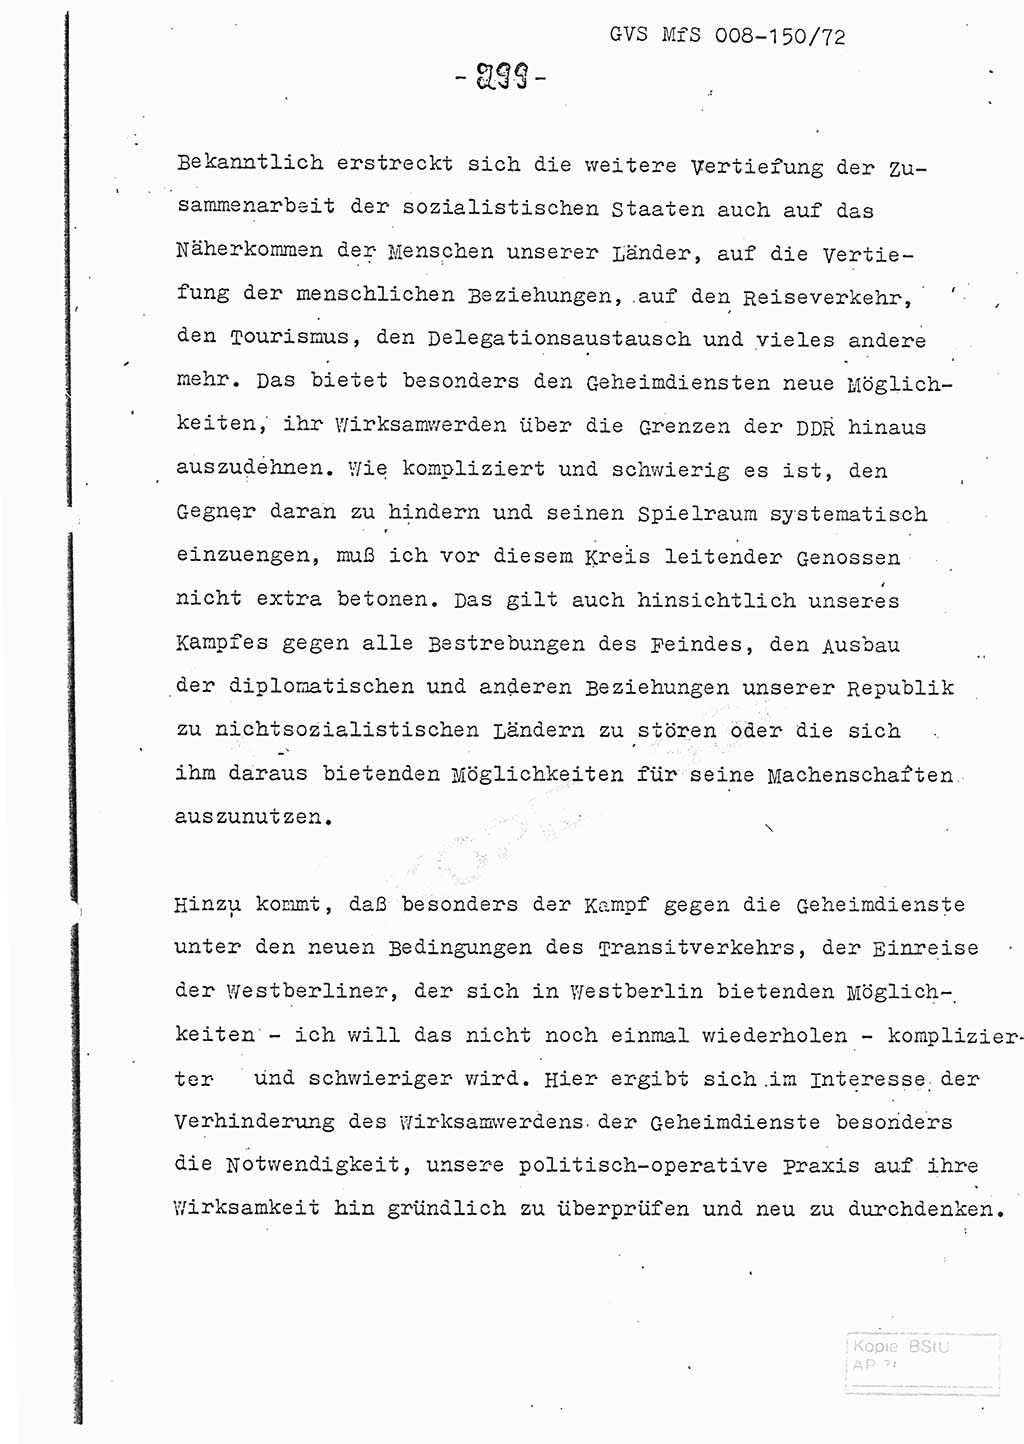 Referat (Entwurf) des Genossen Minister (Generaloberst Erich Mielke) auf der Dienstkonferenz 1972, Ministerium für Staatssicherheit (MfS) [Deutsche Demokratische Republik (DDR)], Der Minister, Geheime Verschlußsache (GVS) 008-150/72, Berlin 25.2.1972, Seite 299 (Ref. Entw. DK MfS DDR Min. GVS 008-150/72 1972, S. 299)